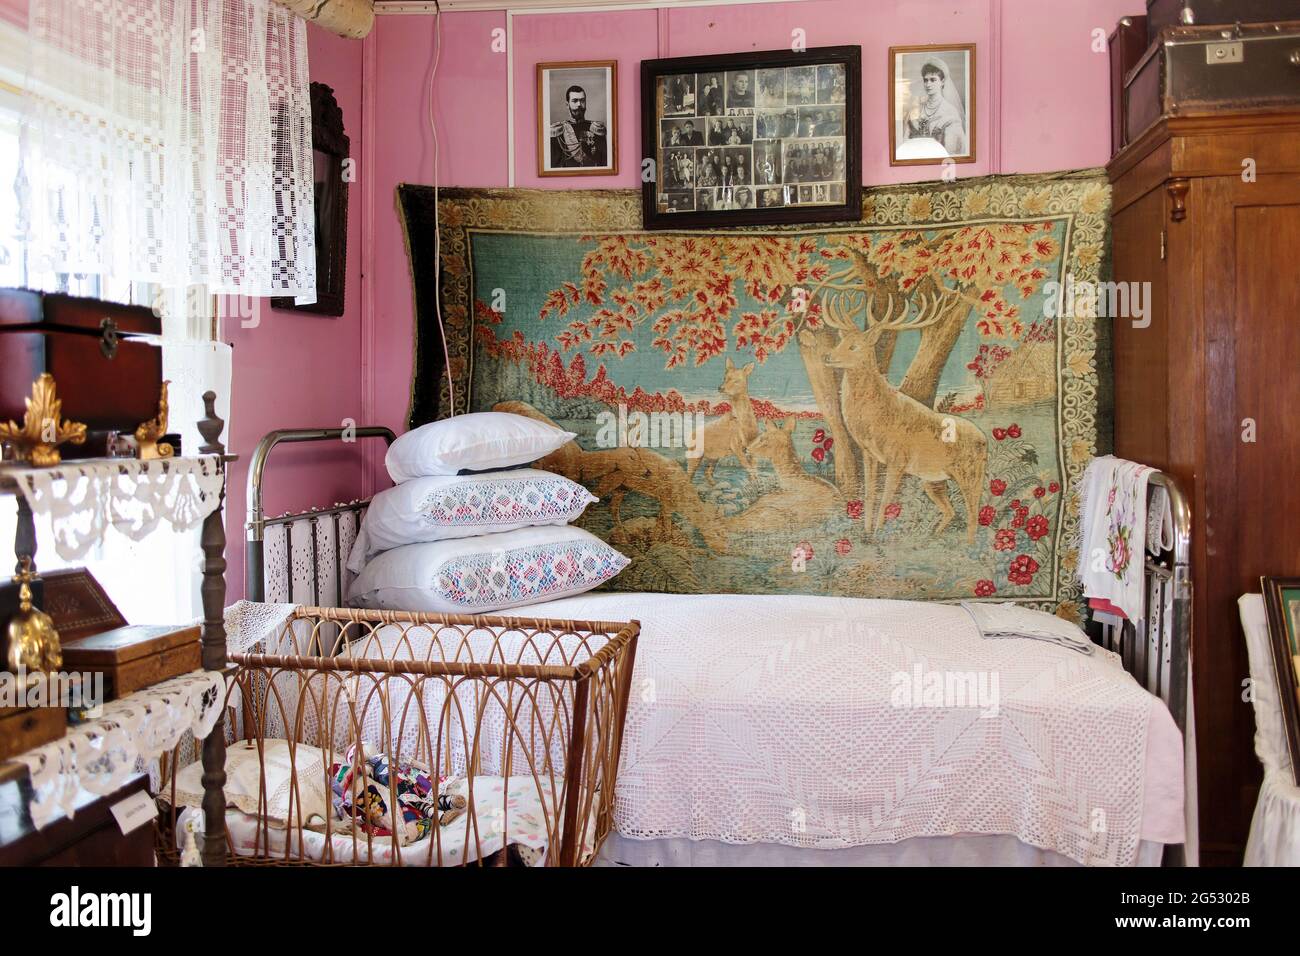 Moskau, Russland - 20. Juni 2021, Fragment einer russischen Hütte. Das Bett  war mit vielen Kissen, Bettüberwürfen und einem alten Fotorahmen über dem  Bett ausgestattet Stockfotografie - Alamy